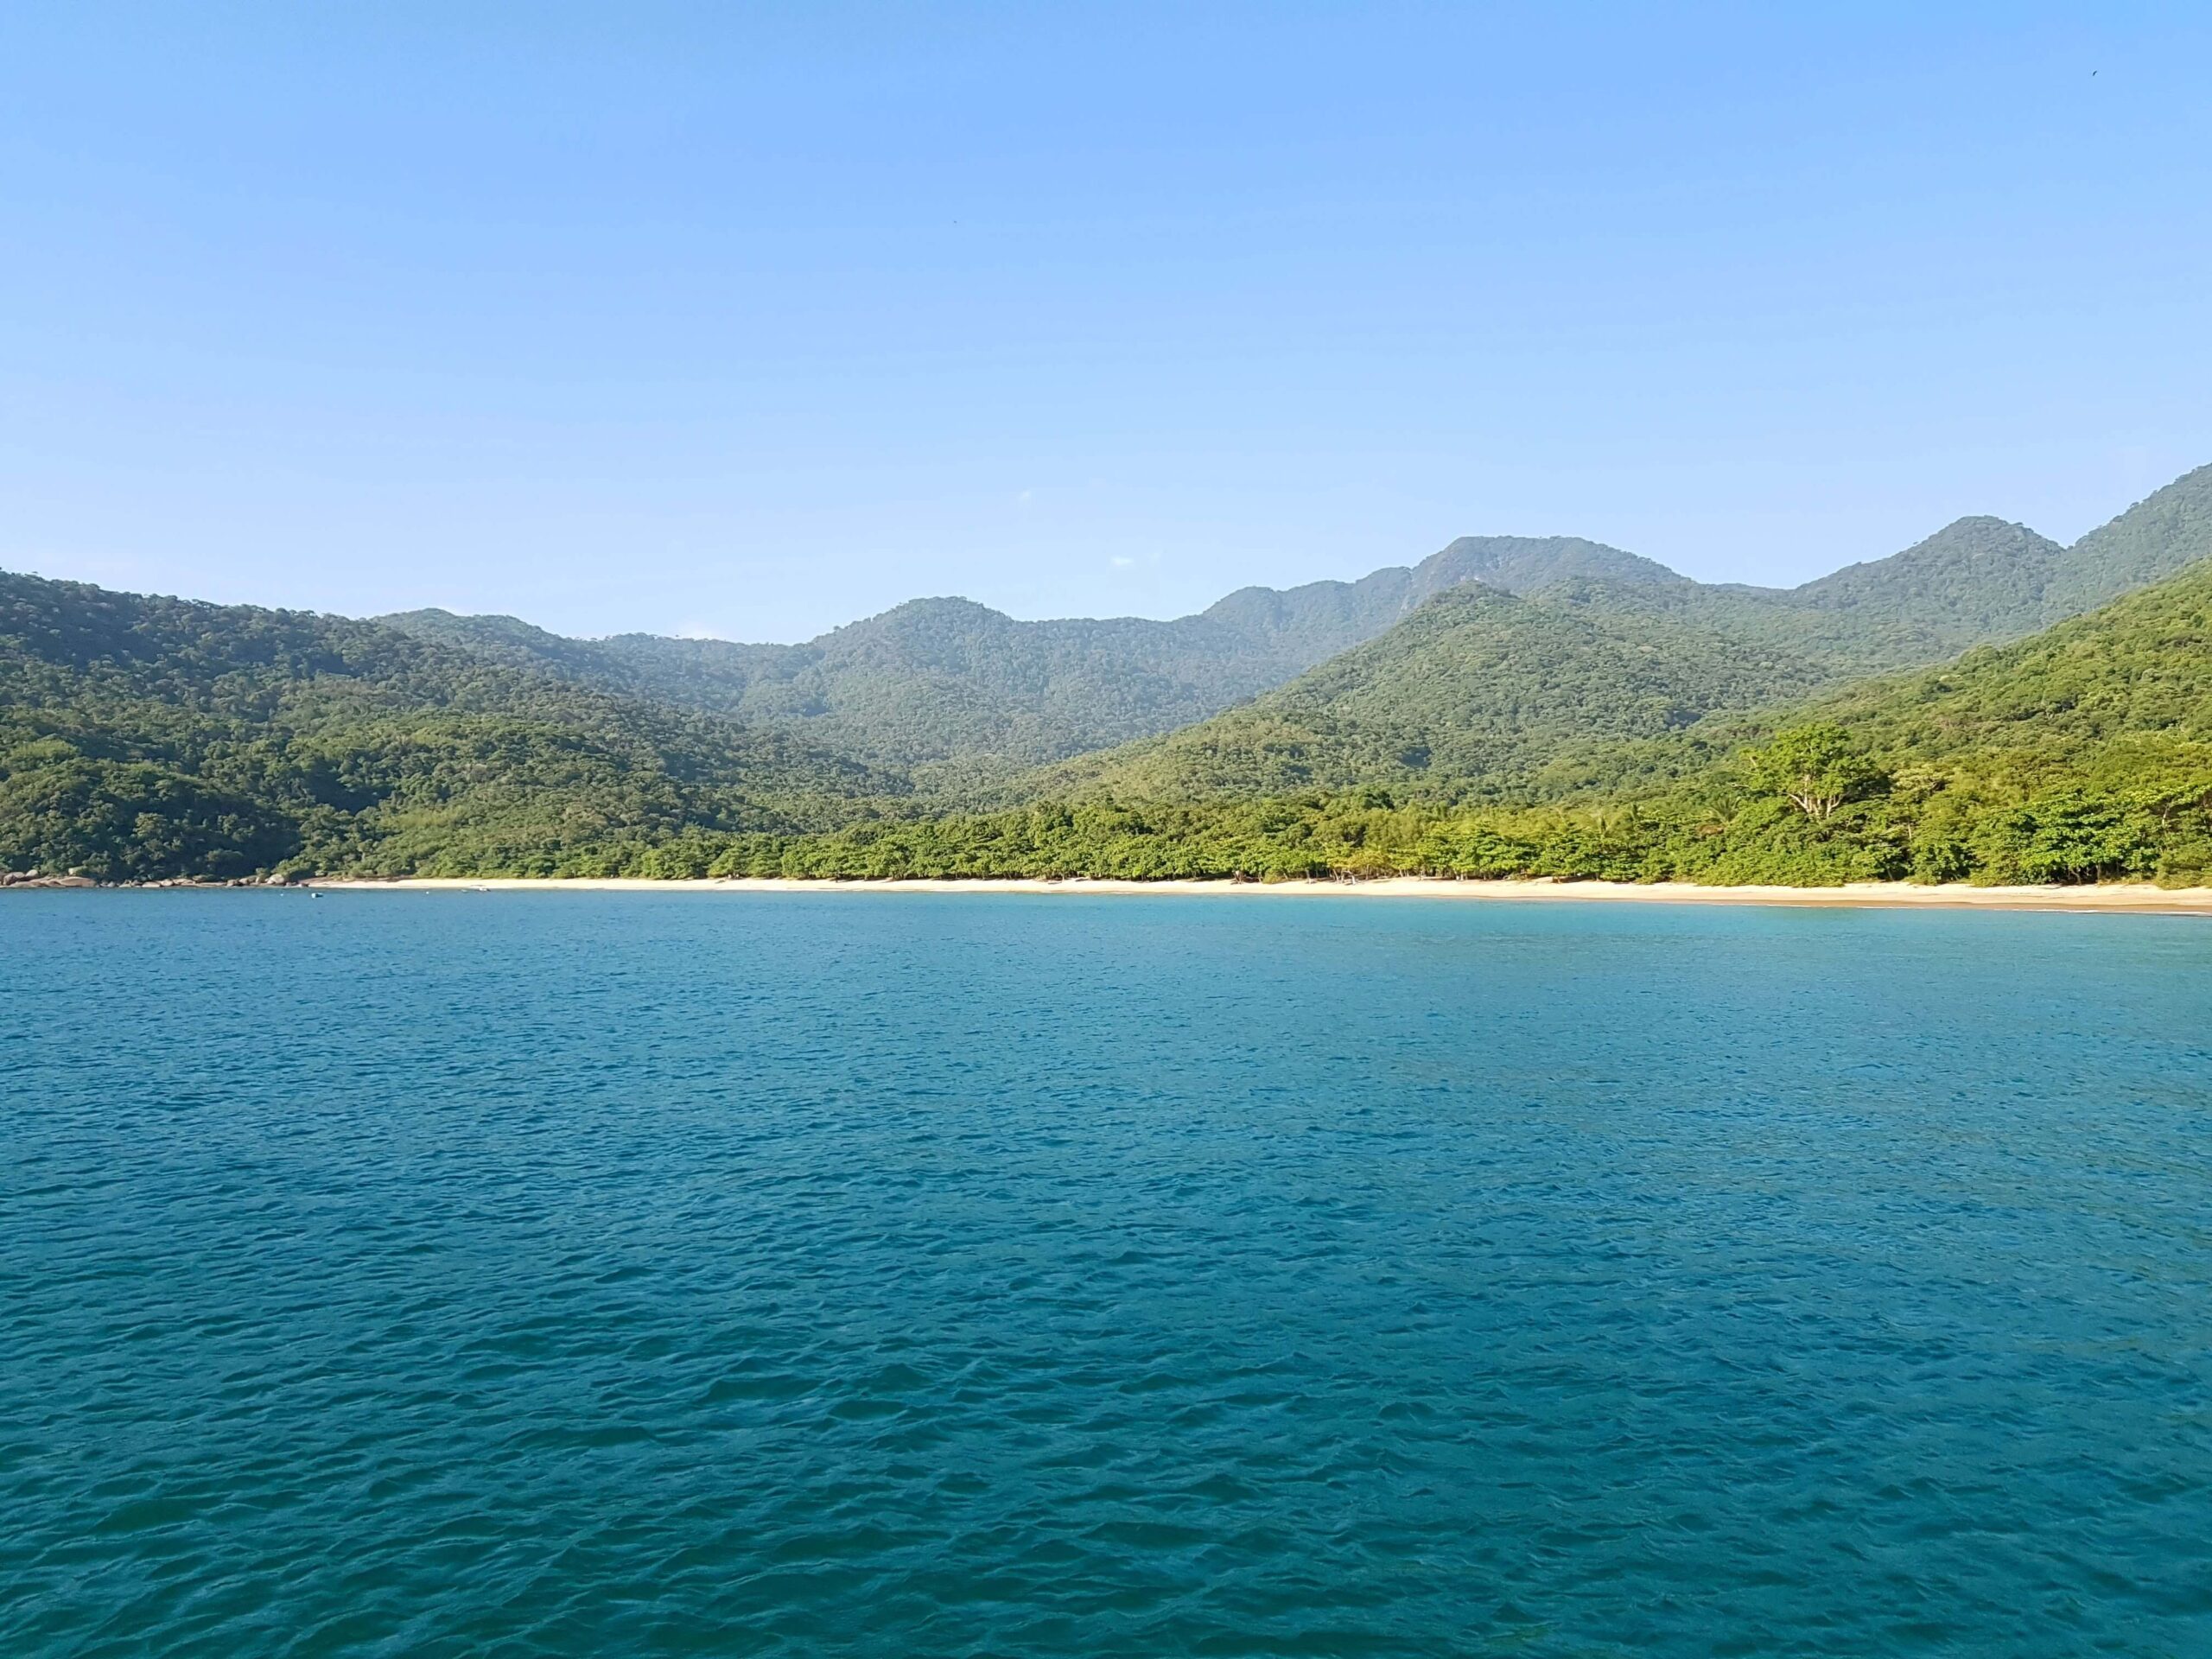 Fotografia com vista para um oceano de água azul clara em primeiro plano, com uma praia de areia branca isolada e uma densa floresta tropical até as montanhas ao fundo, sob um céu azul claro.